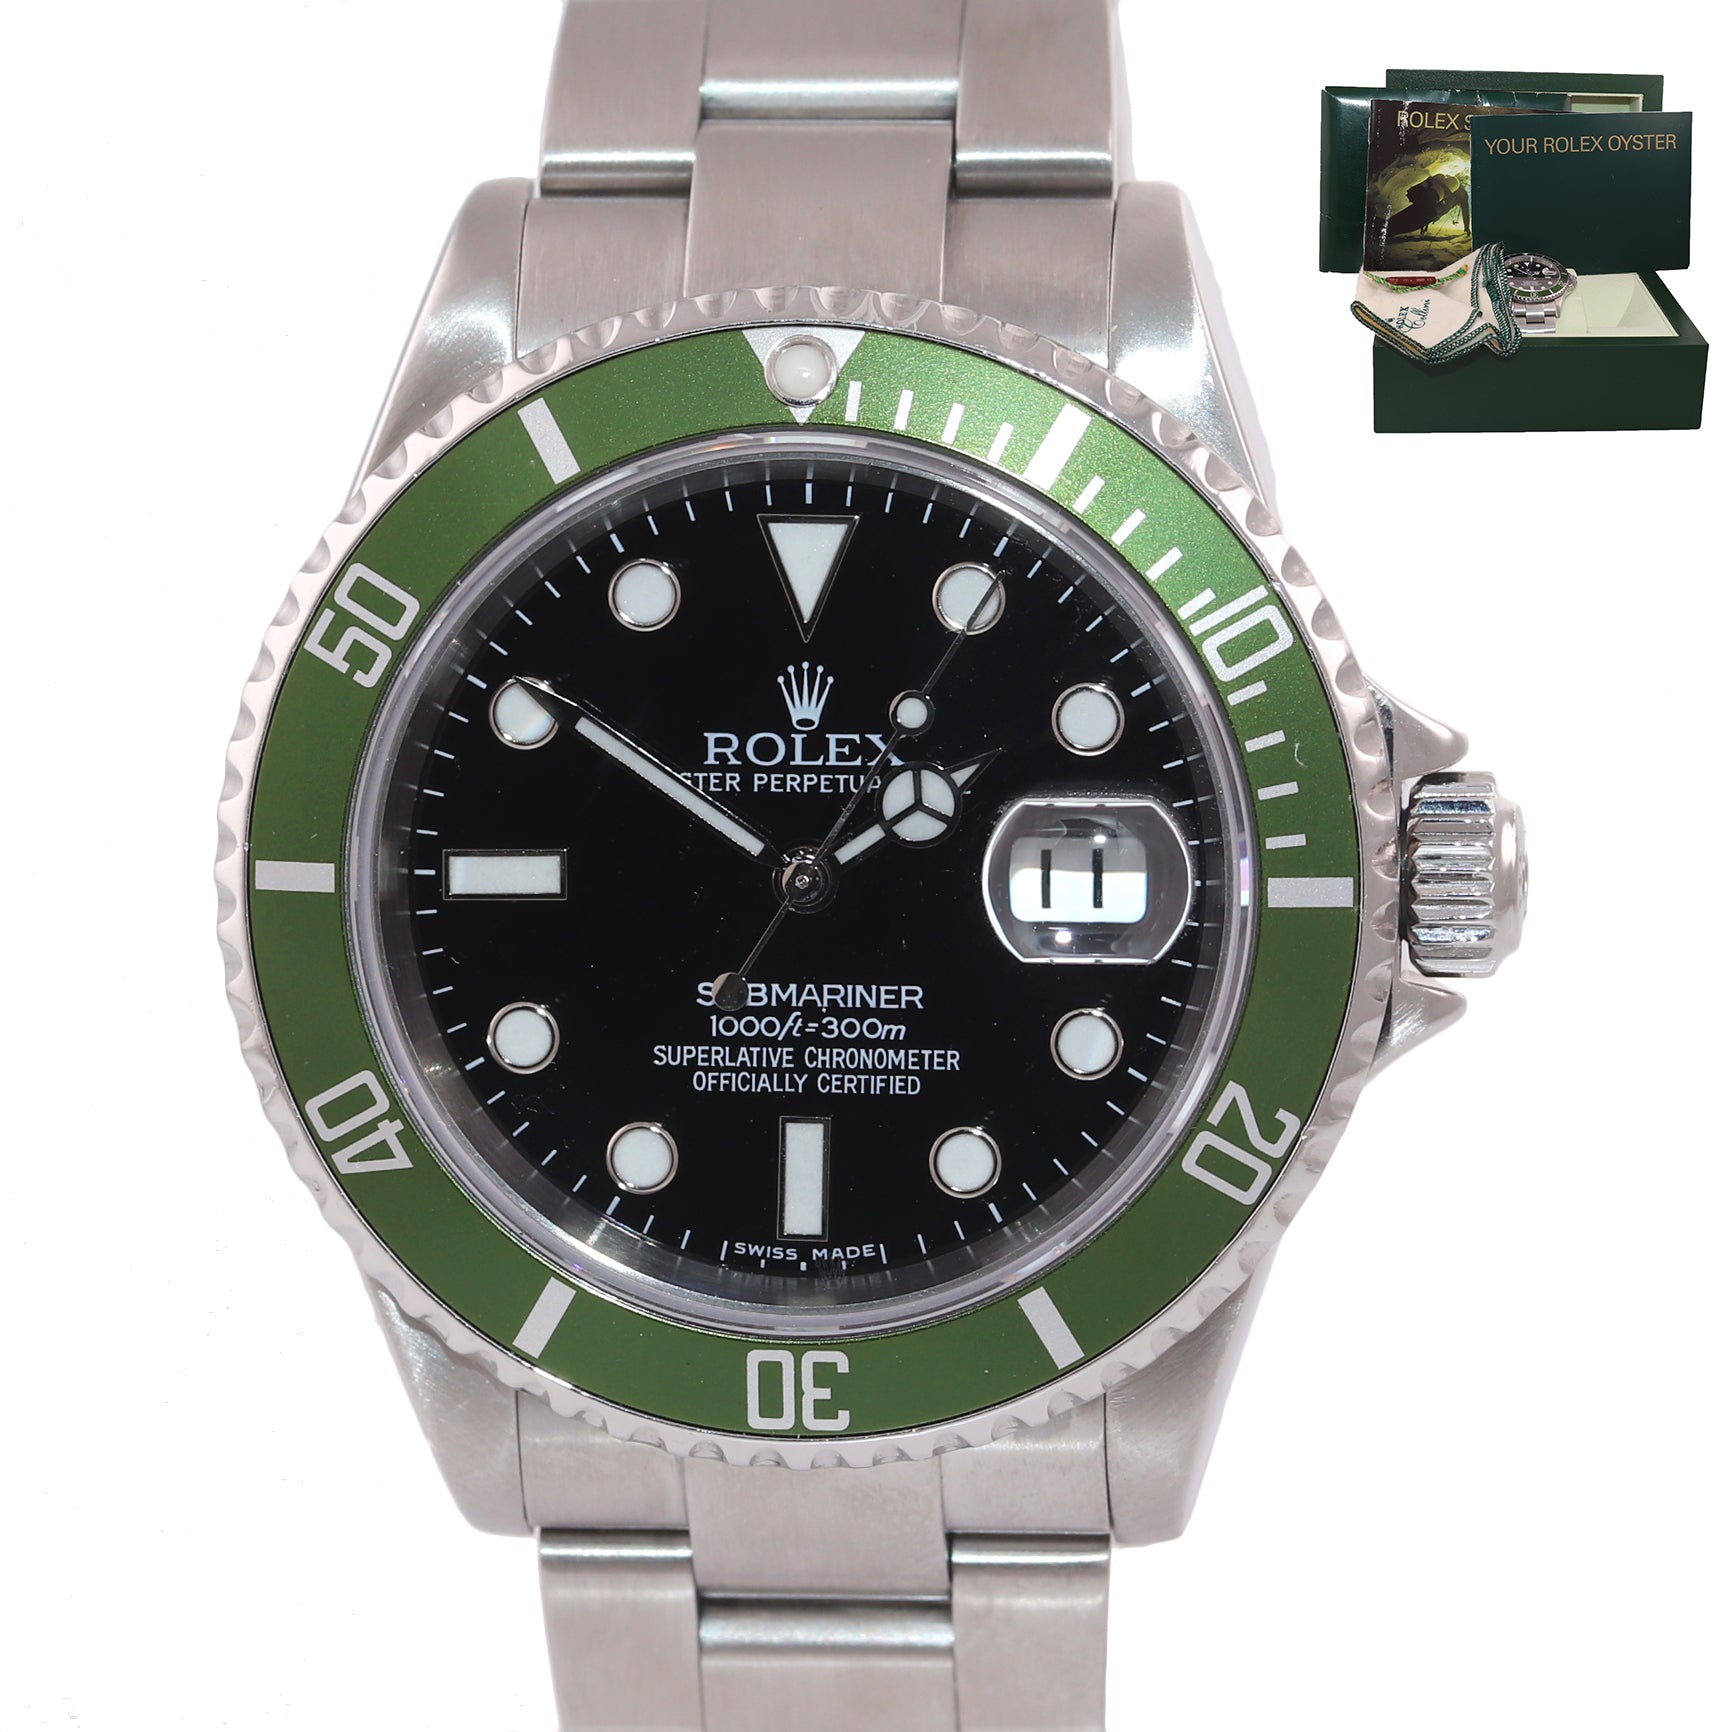 ROLEX Rolex 16610LV Rolex Submariner Kermit 40mm Green Anniversary Watch 40mm